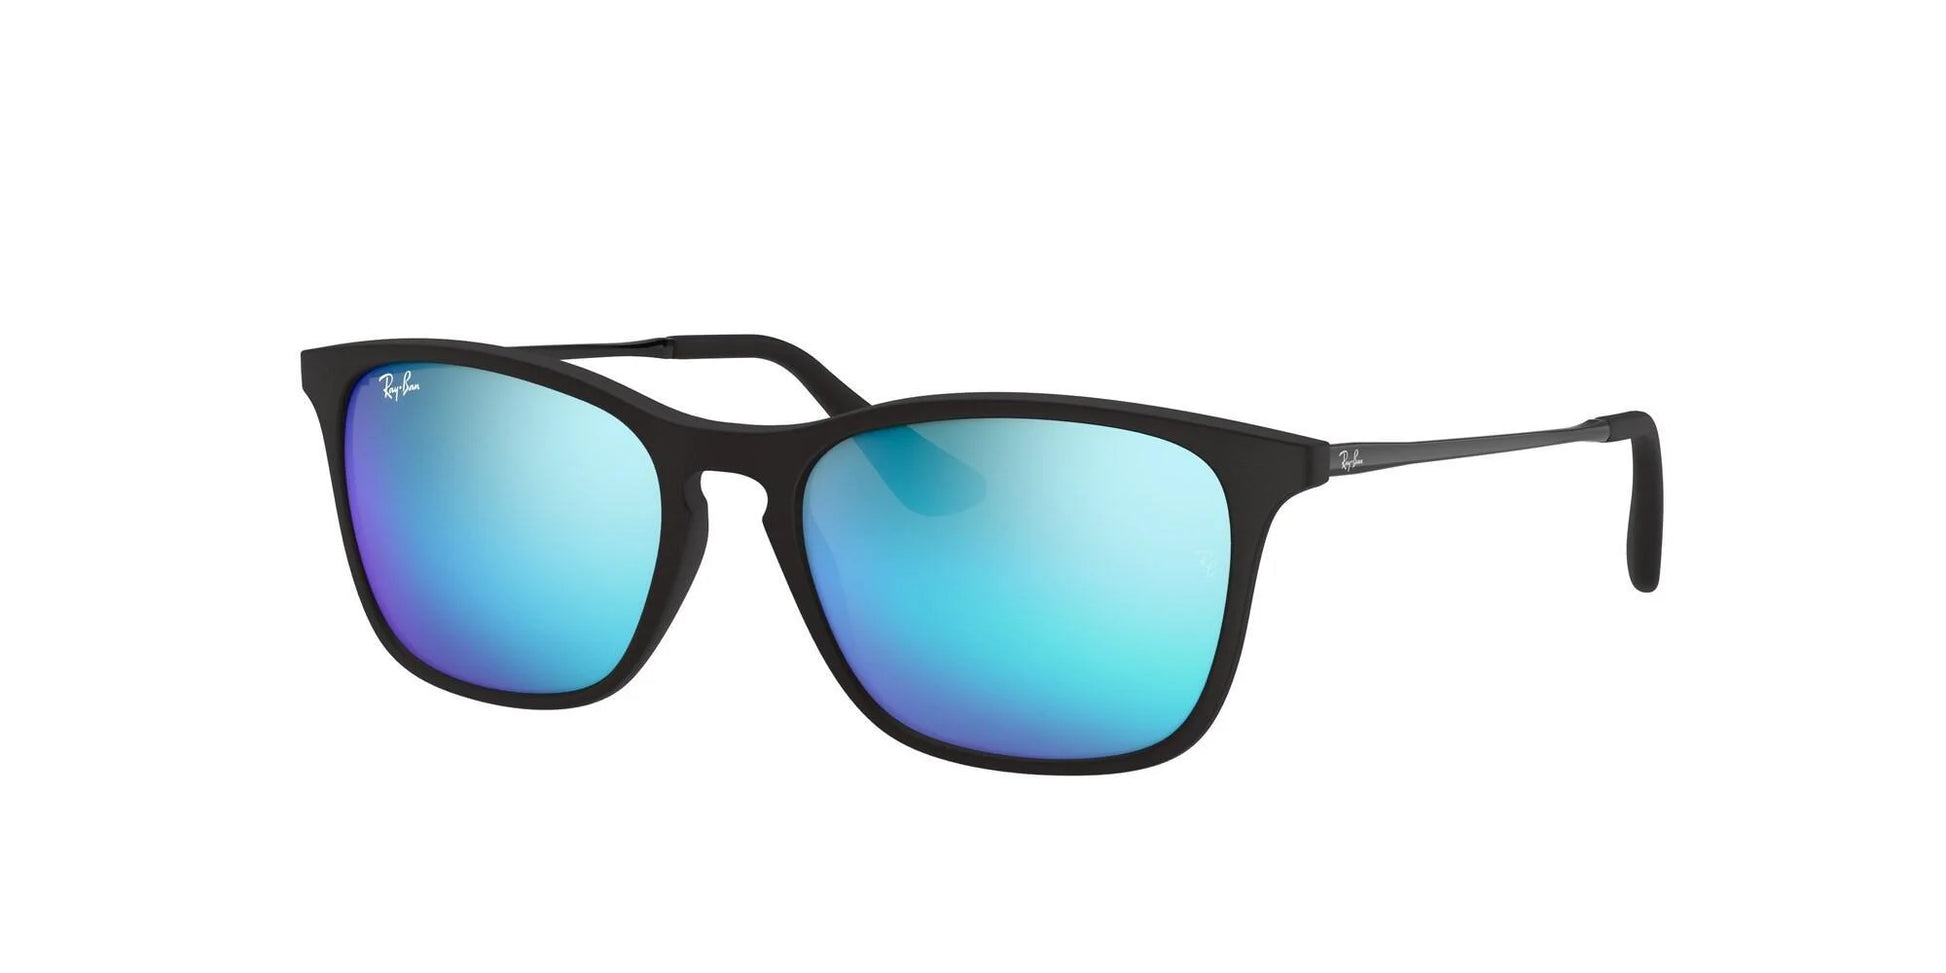 Ray-Ban RJ9061SF Sunglasses Black / Blue Flash